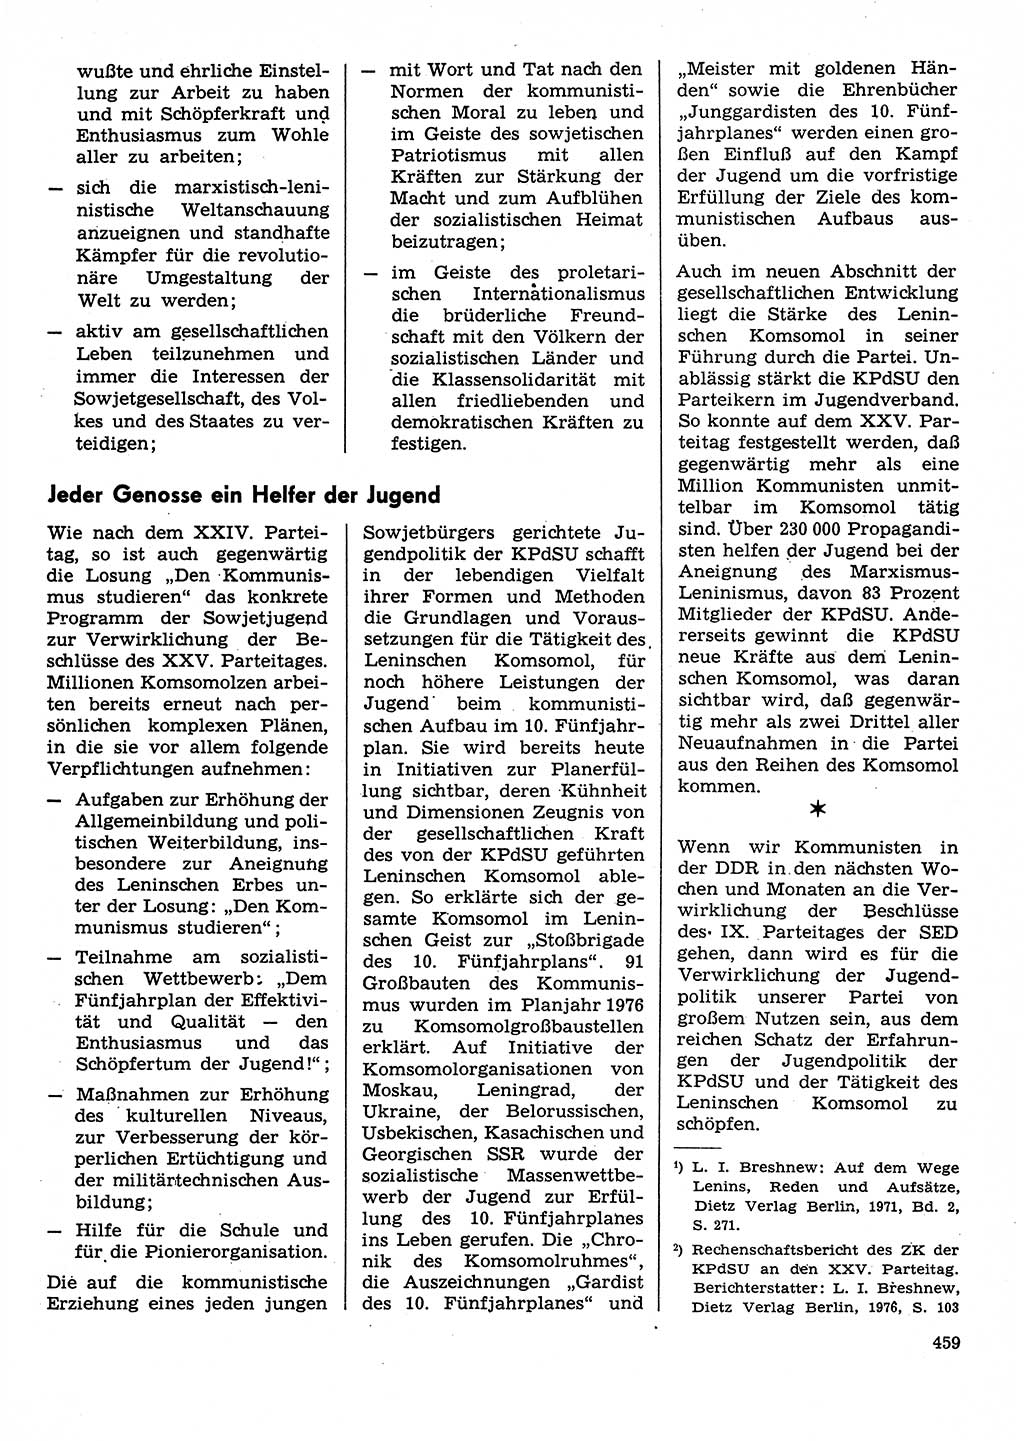 Neuer Weg (NW), Organ des Zentralkomitees (ZK) der SED (Sozialistische Einheitspartei Deutschlands) für Fragen des Parteilebens, 31. Jahrgang [Deutsche Demokratische Republik (DDR)] 1976, Seite 459 (NW ZK SED DDR 1976, S. 459)